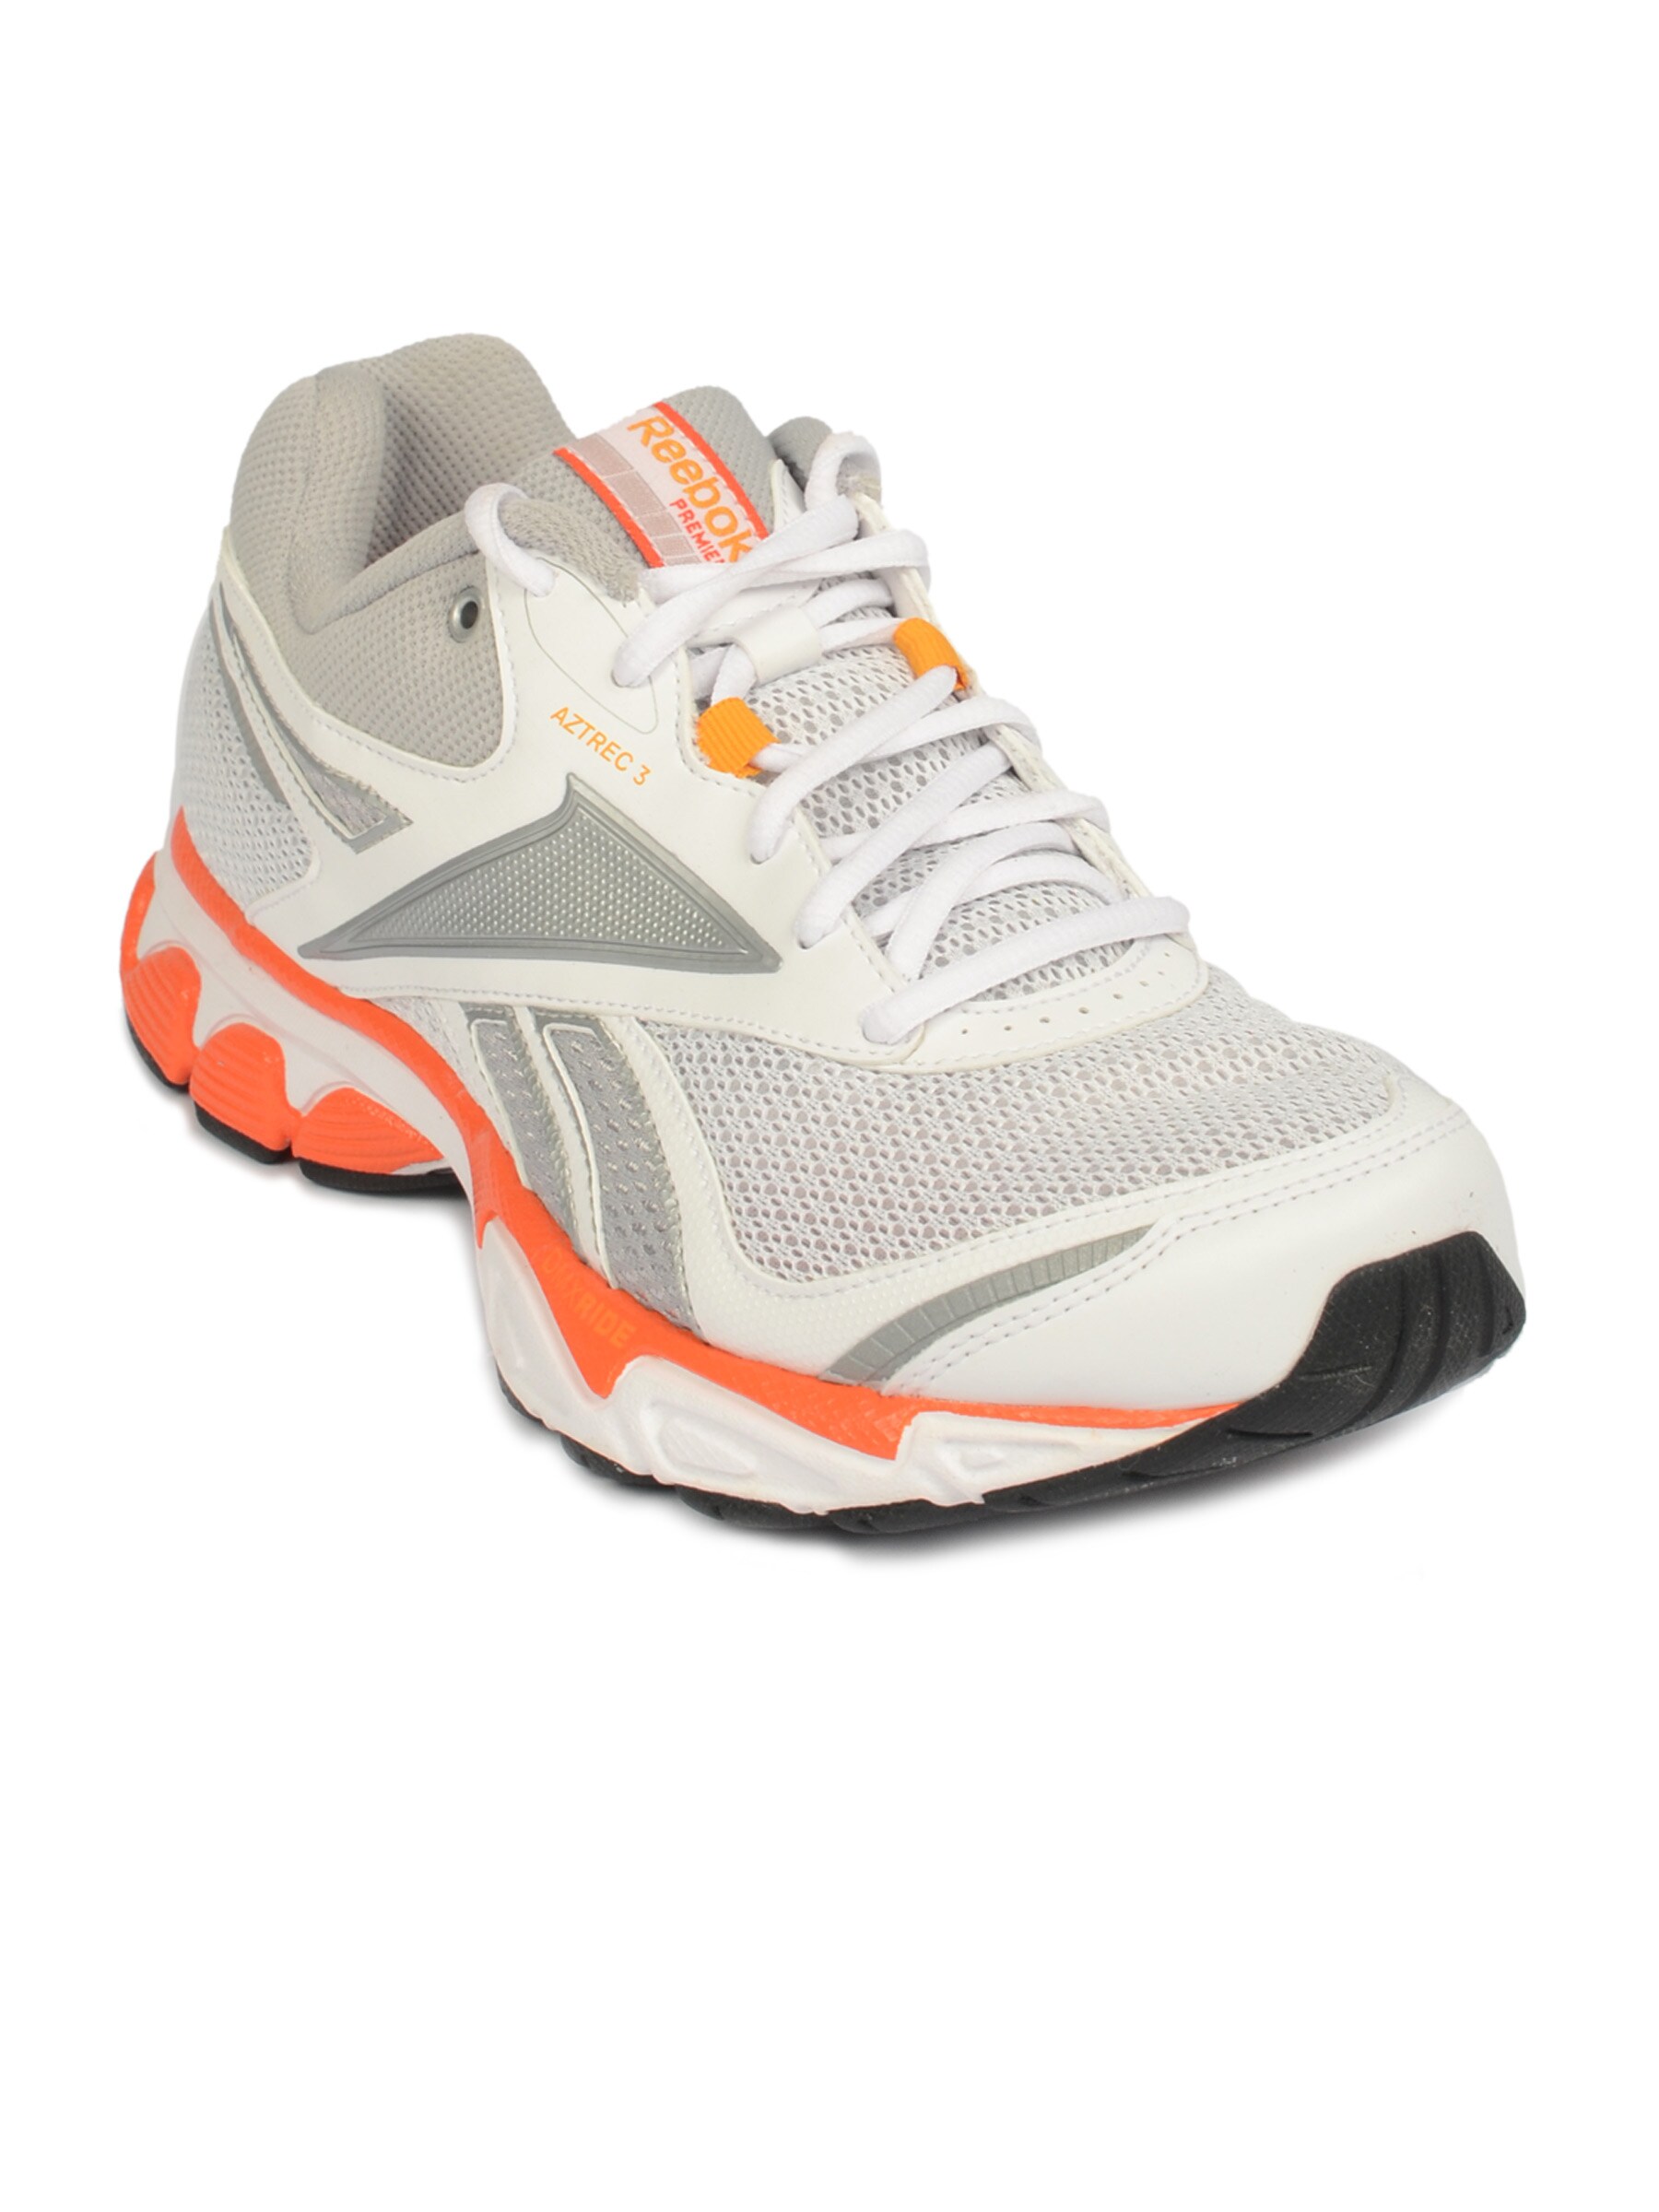 Reebok Men's Premier Aztrec 3 White Orange Shoe